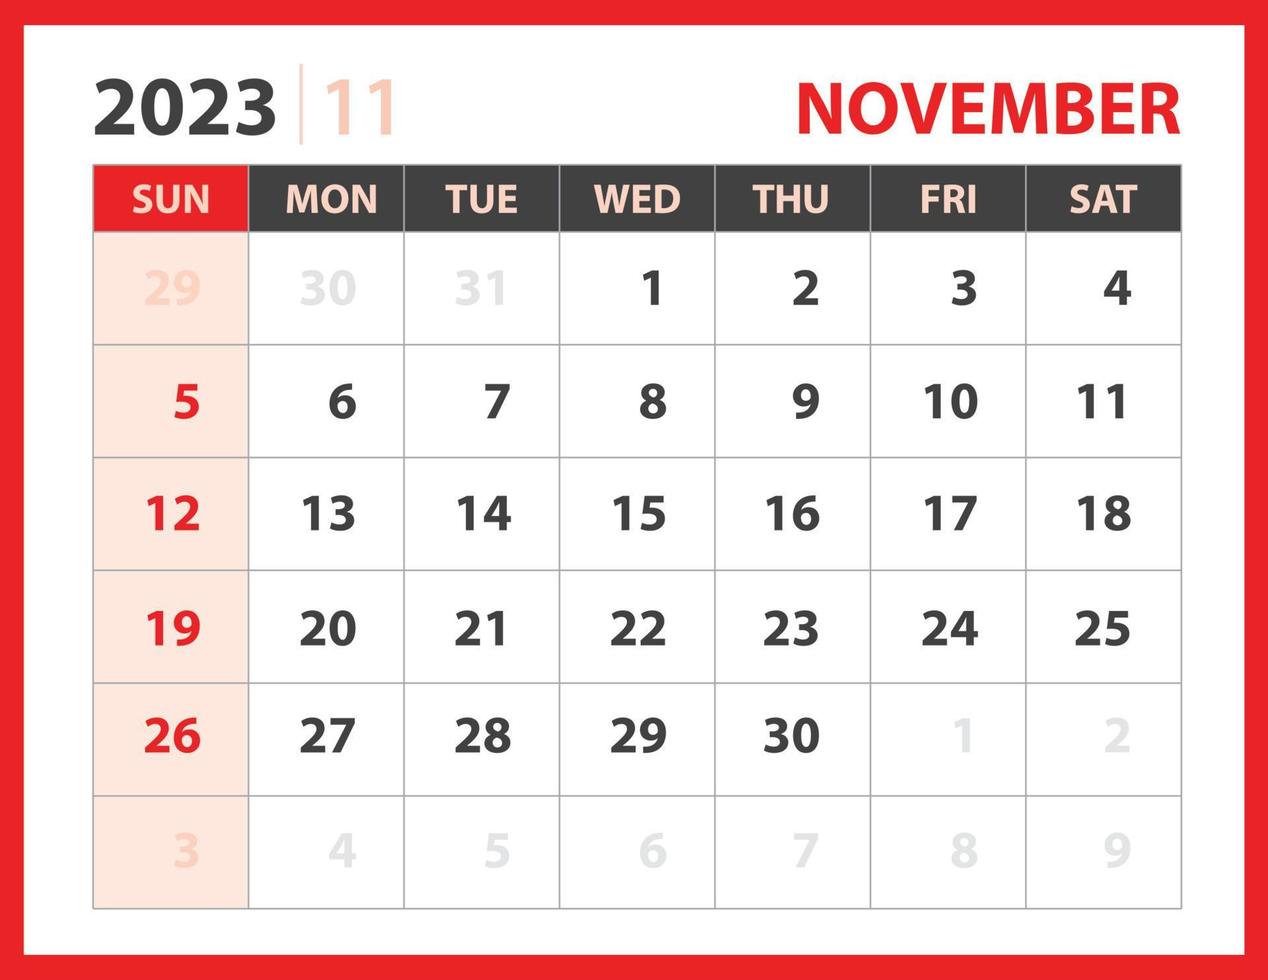 November 2023 Vorlage, Kalender 2023 Designvektor, Planerlayout, Woche beginnt am Sonntag, Tischkalender 2023 Vorlage, Briefpapier. Wandkalender auf rotem Hintergrund, Vektor eps 10